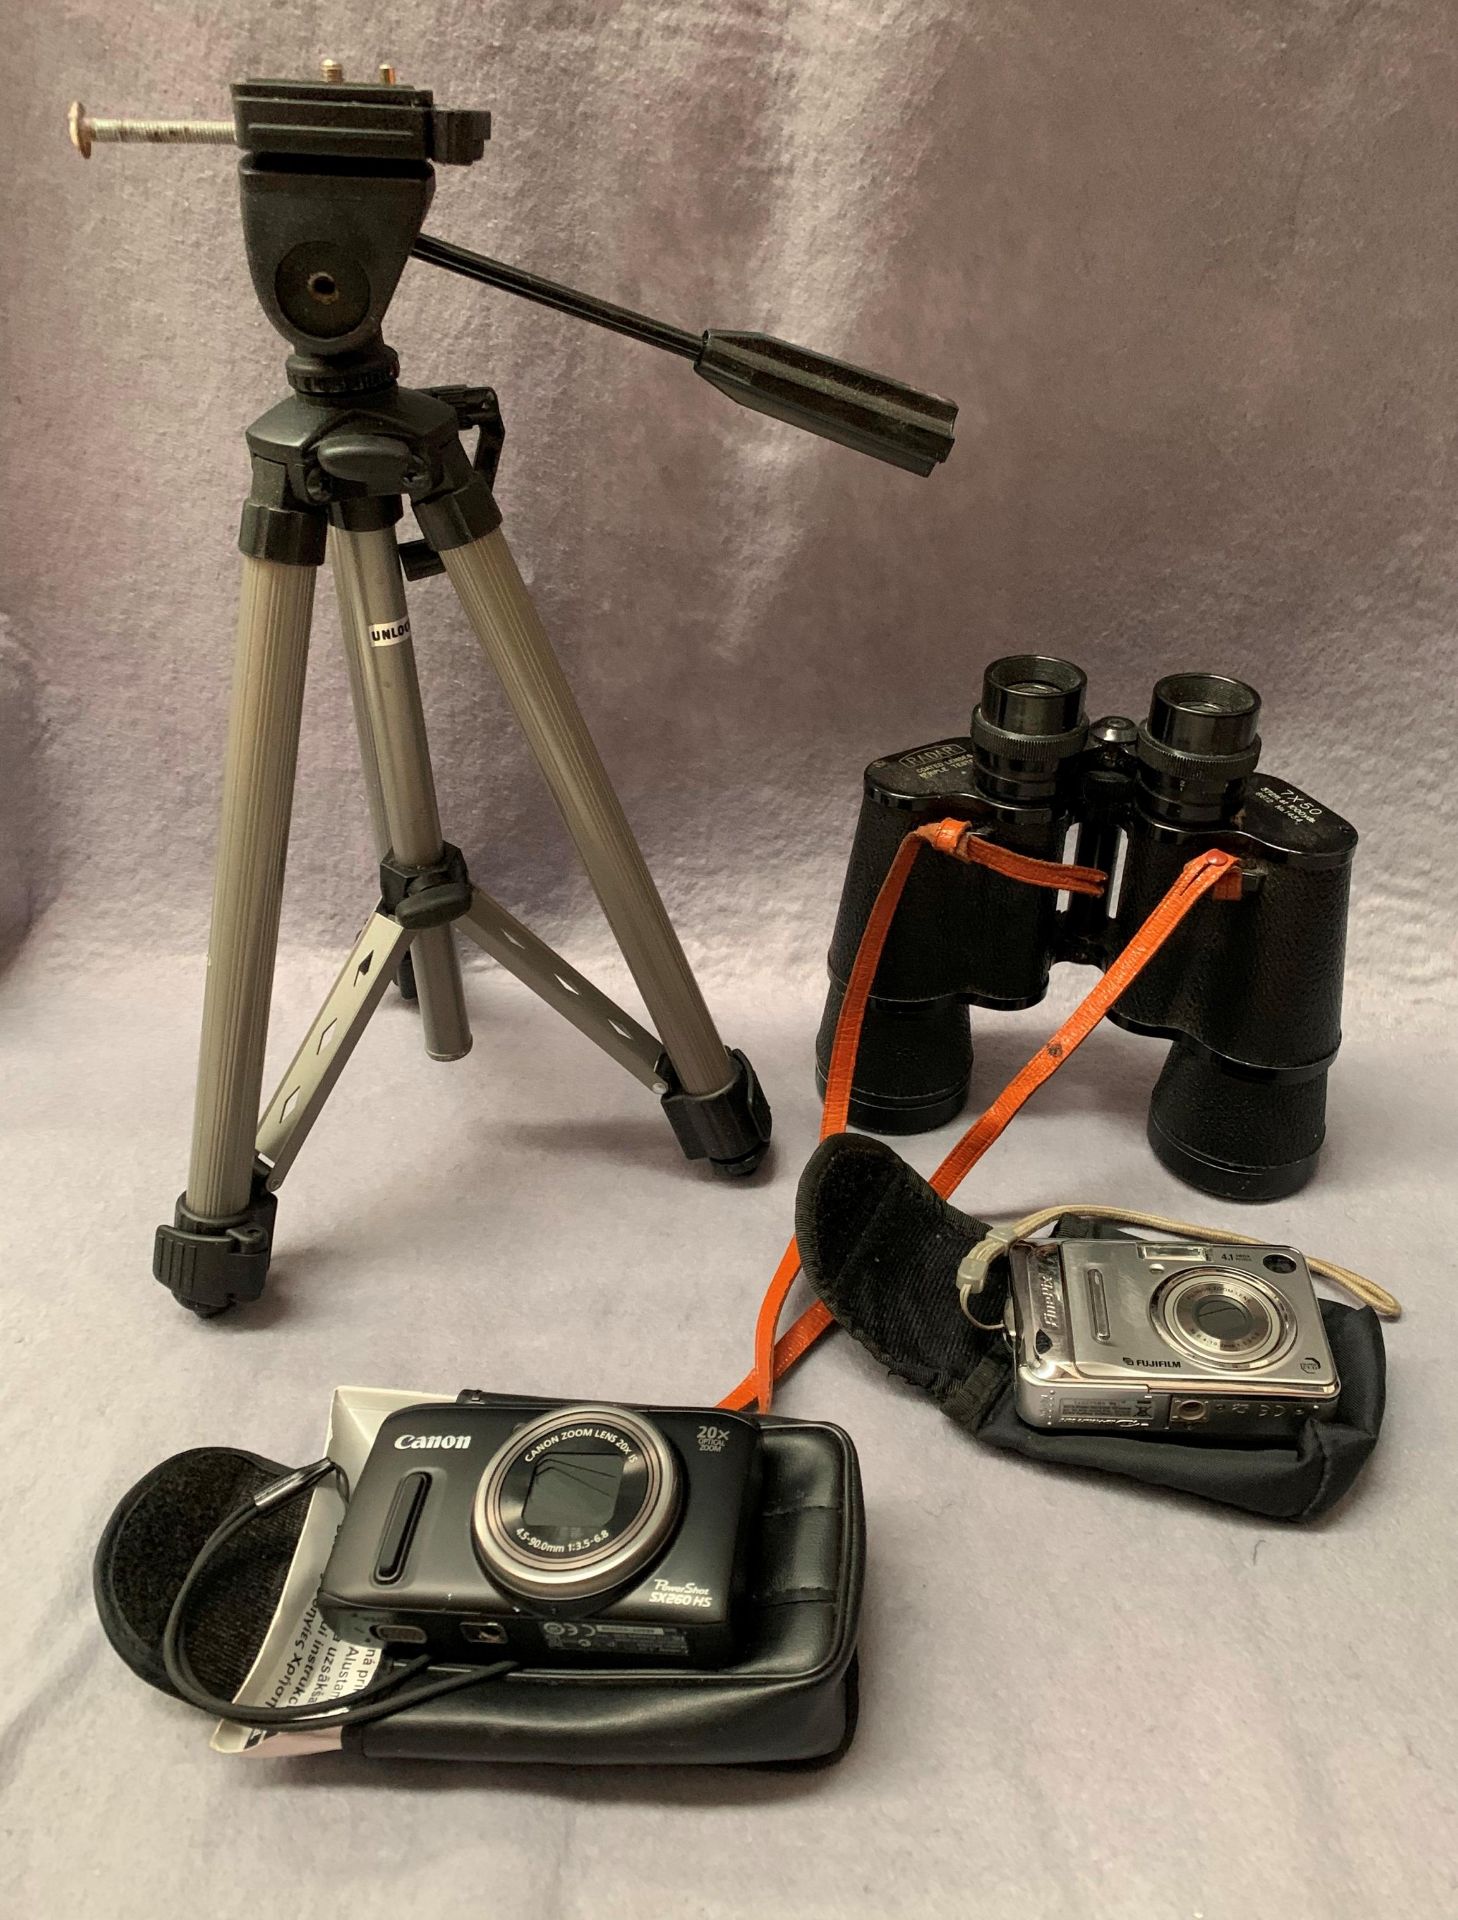 A Canon Powershot 5 x 260 HS camera in bag, a FujiFilm Finepix camera,